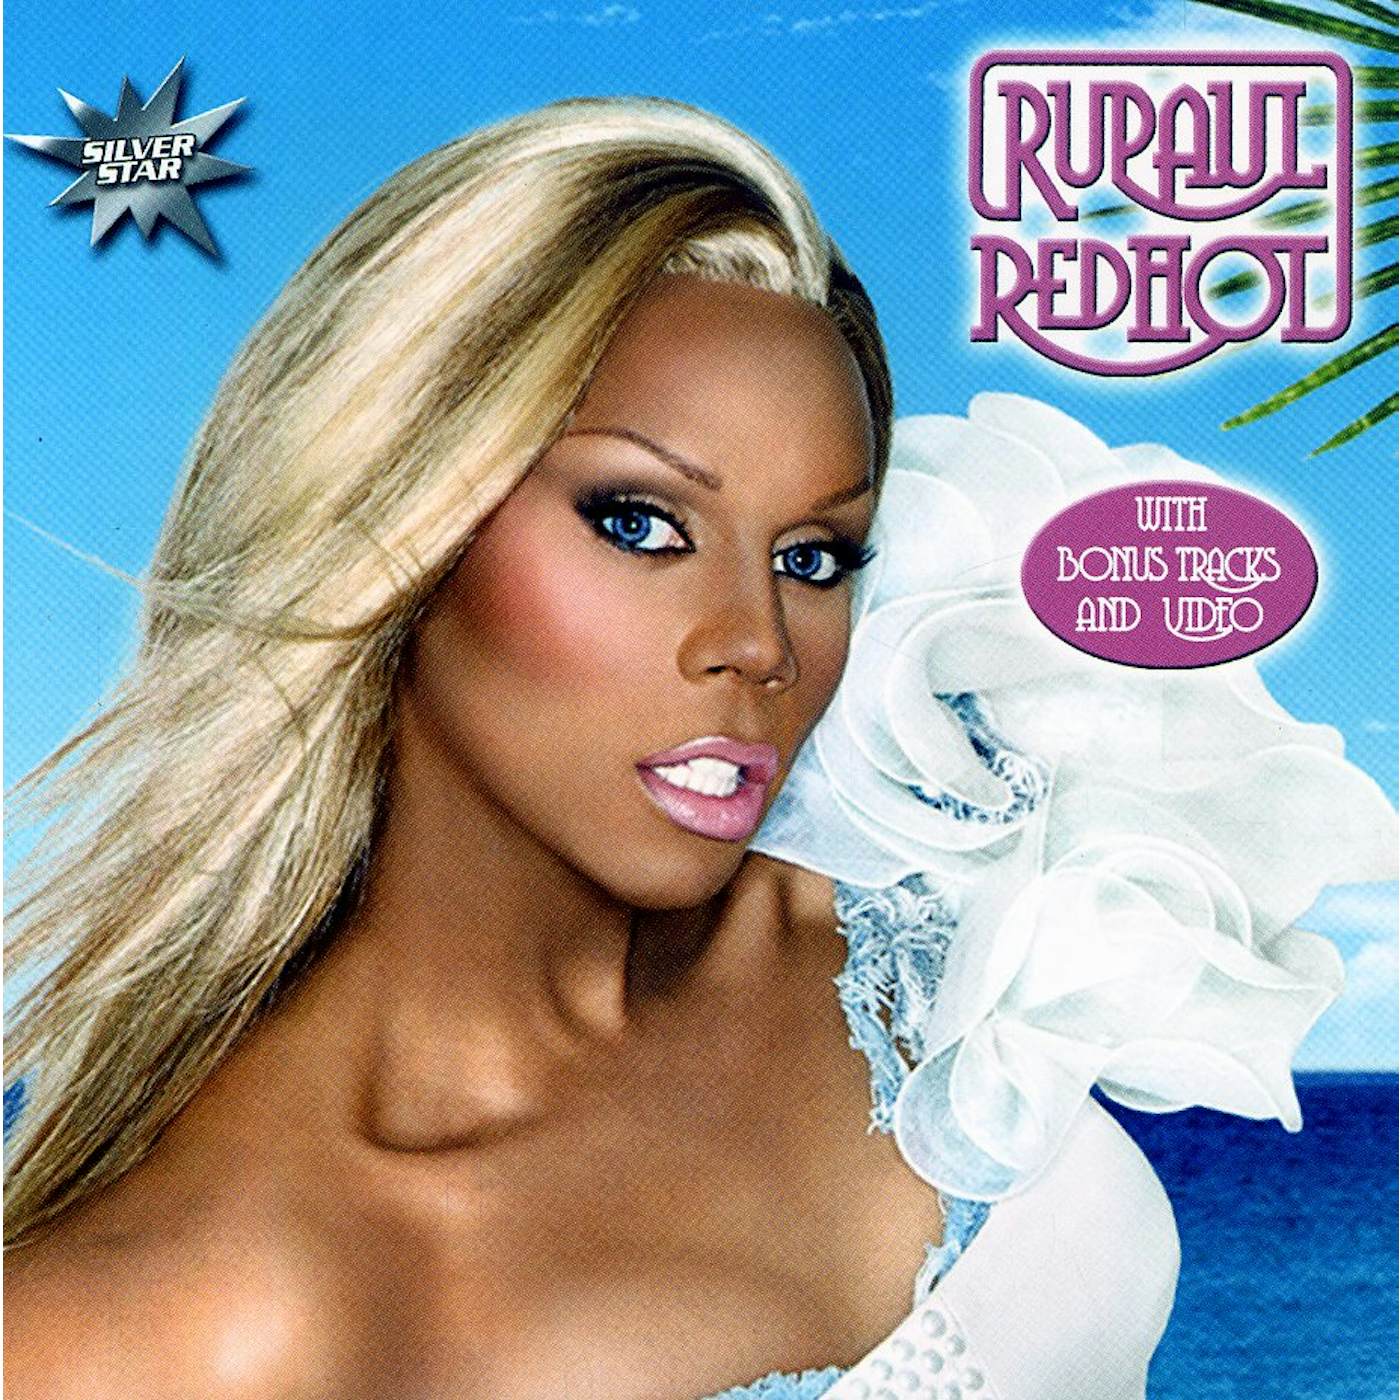 RuPaul REDHOT CD